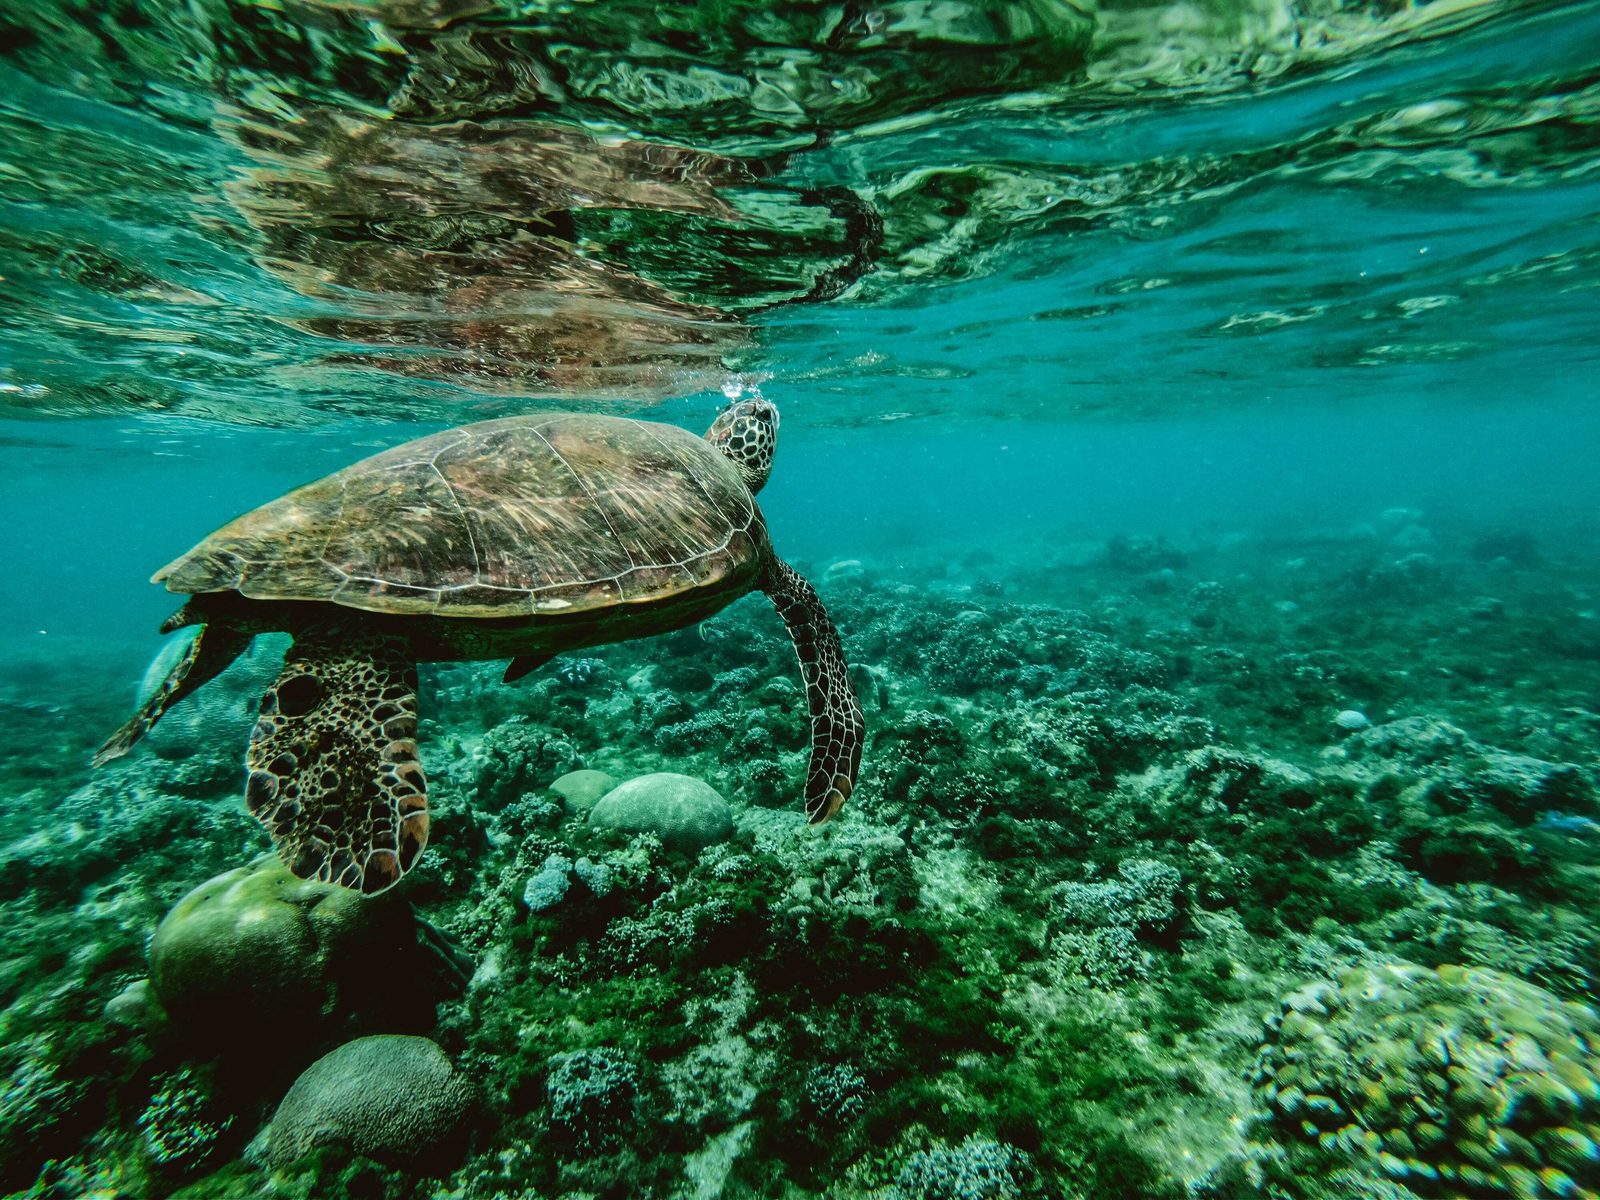 Dieren op Bonaire zijn niet alleen leuk om naar te kijken, ook om mee te zwemmen. Lees meer over de dieren op Bonaire, die je kunt tegenkomen.